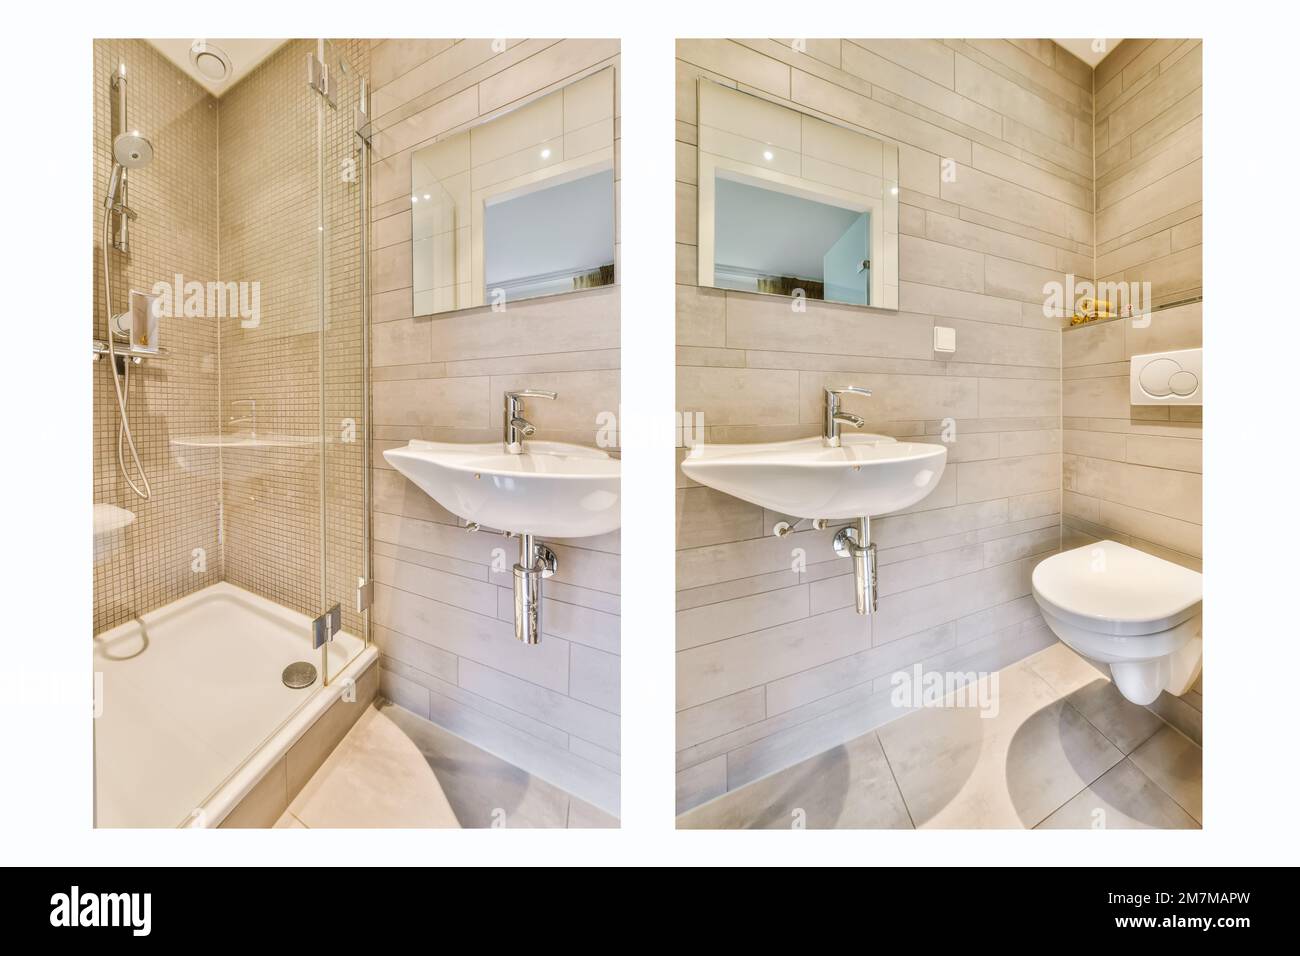 Ein Badezimmer mit zwei Waschbecken und einer Badewanne auf demselben Foto, eines mit einem Spiegel an der Wand Stockfoto